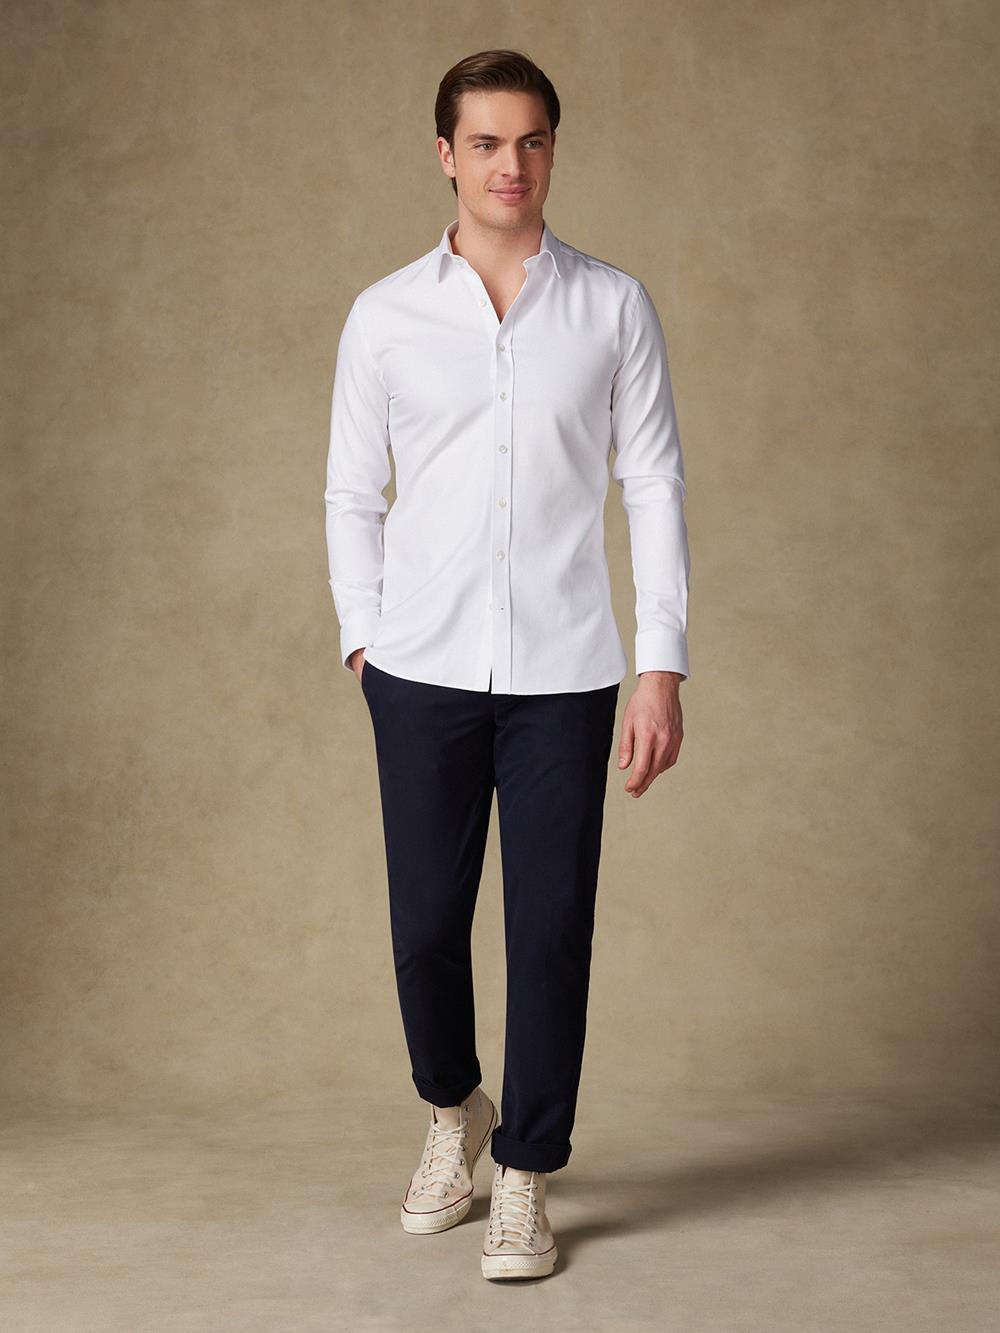 Tailliertes Hemd aus Royal-Twill weiß